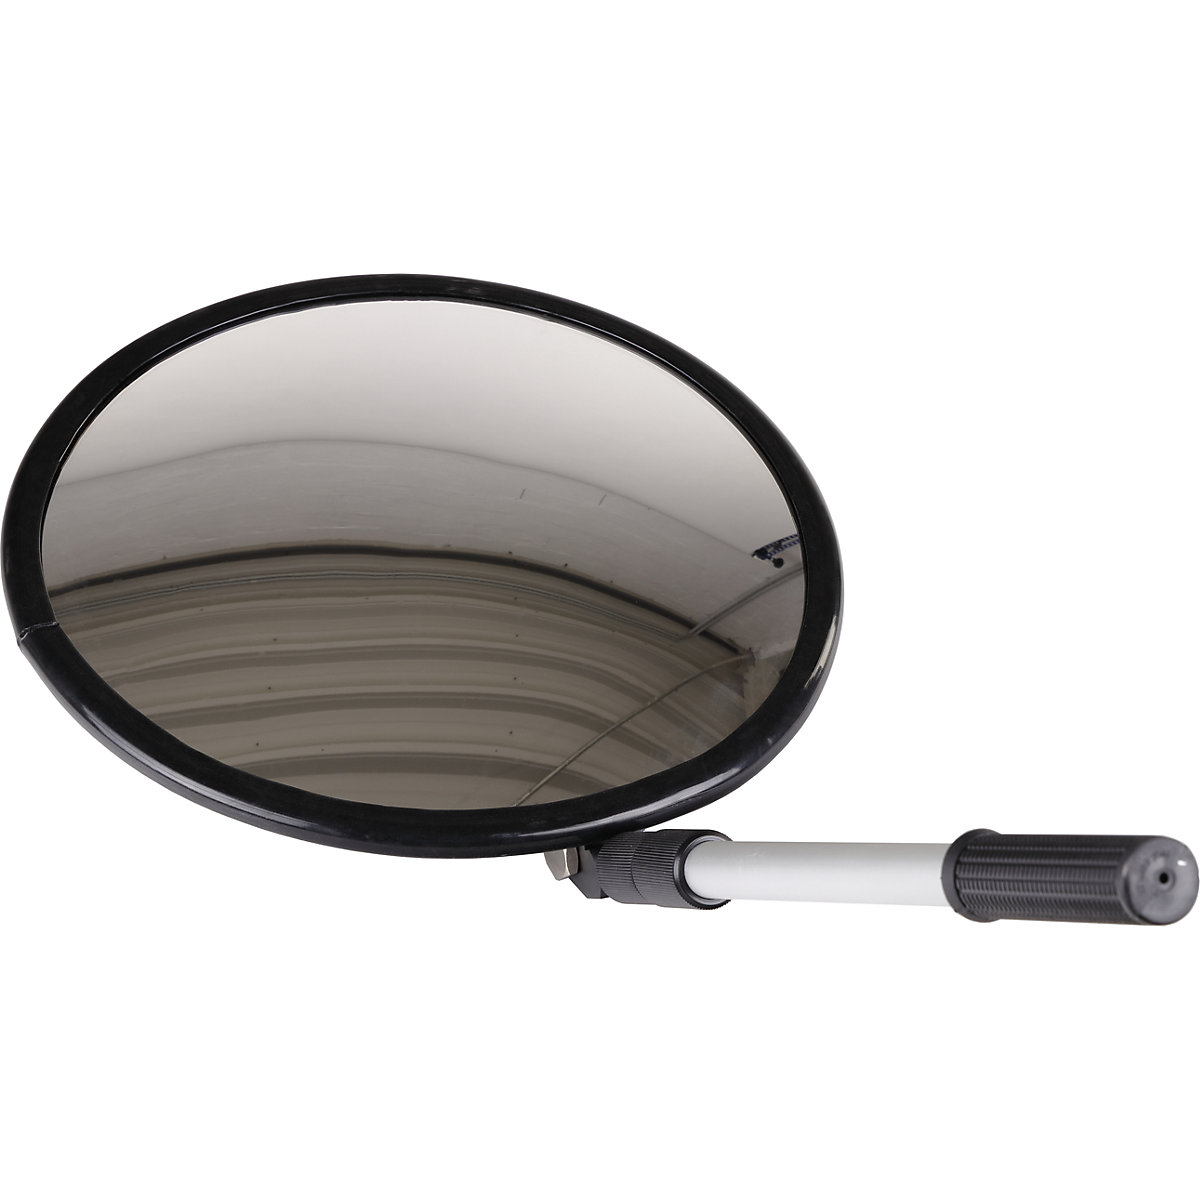 Inspektionsspiegel mit Teleskoparm, rund, mit Rollenfüßen, Ø 350 mm